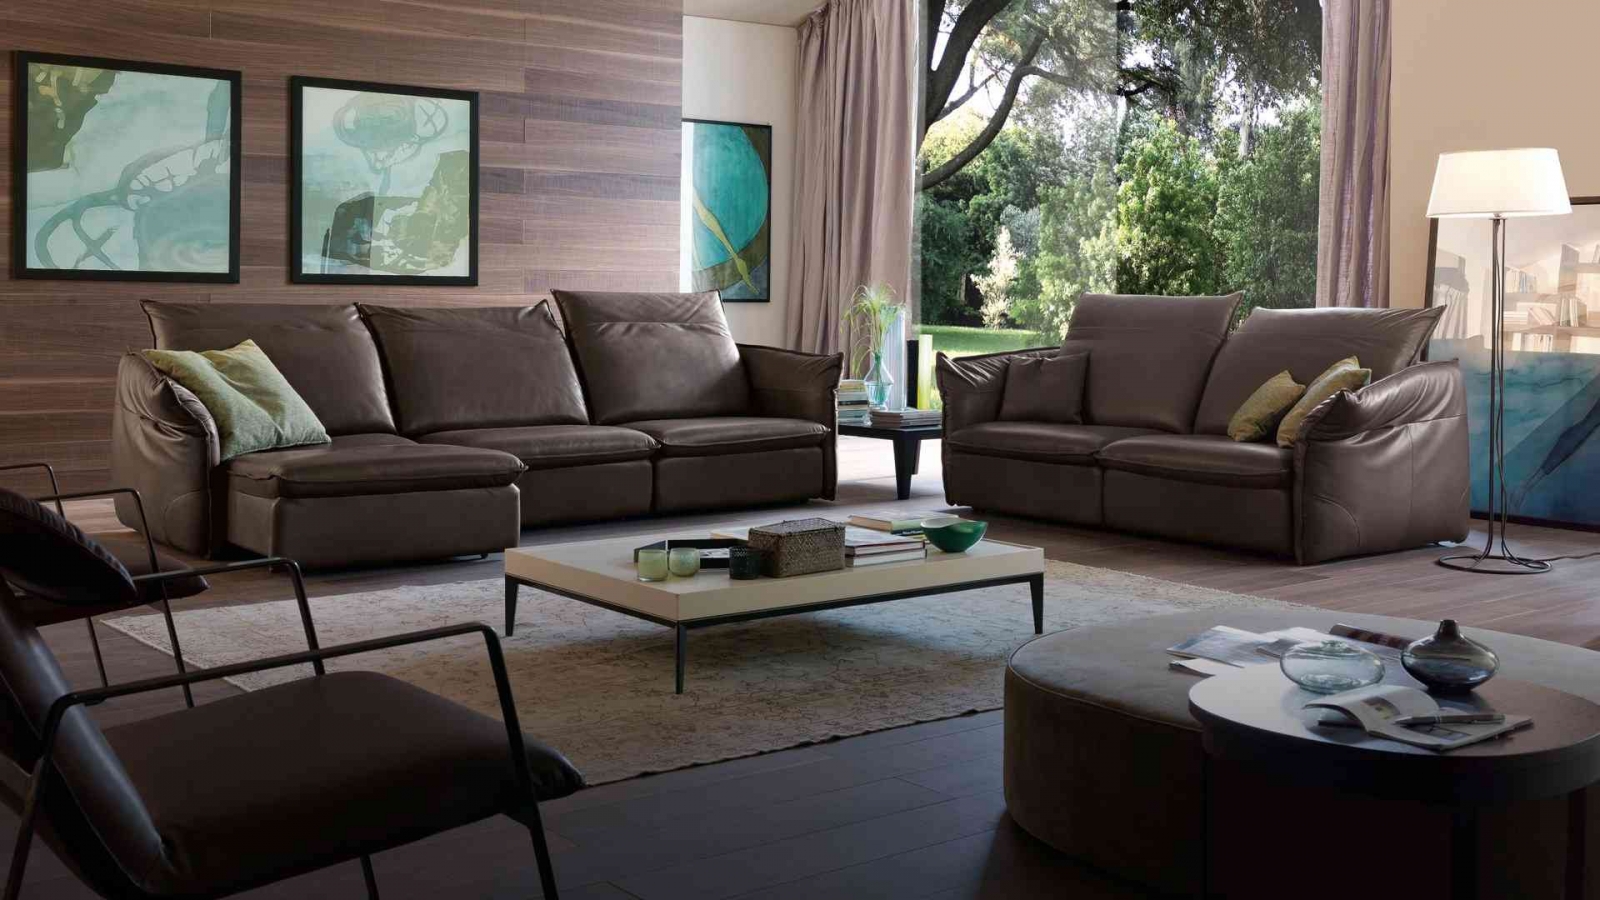 Một số tip cần lưu ý khi lựa chọn sofa cho ngôi nhà của mình